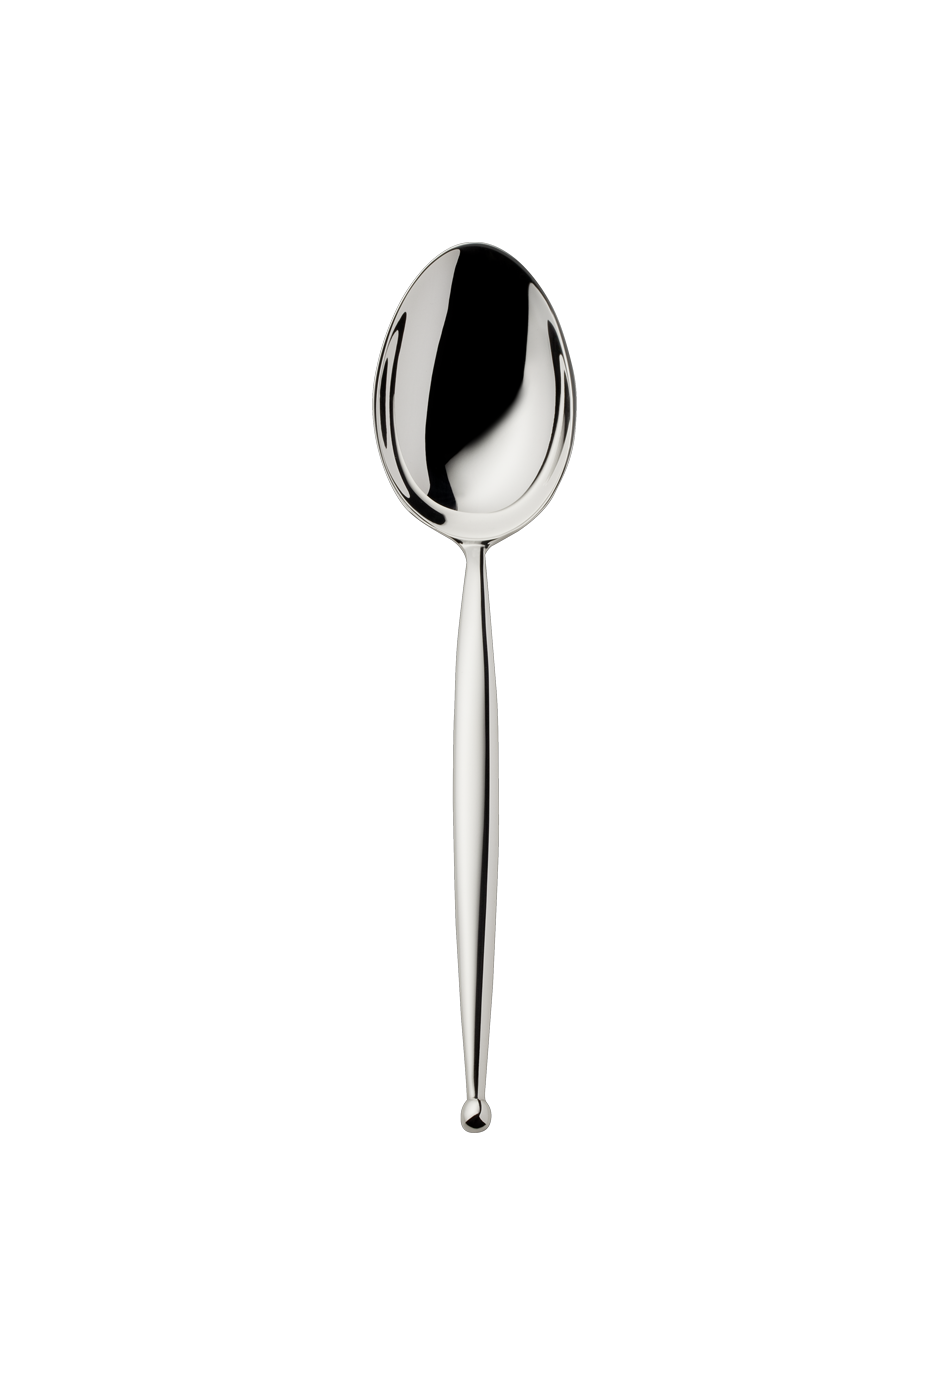 Gio Dessert Spoon (150g massive silverplated)